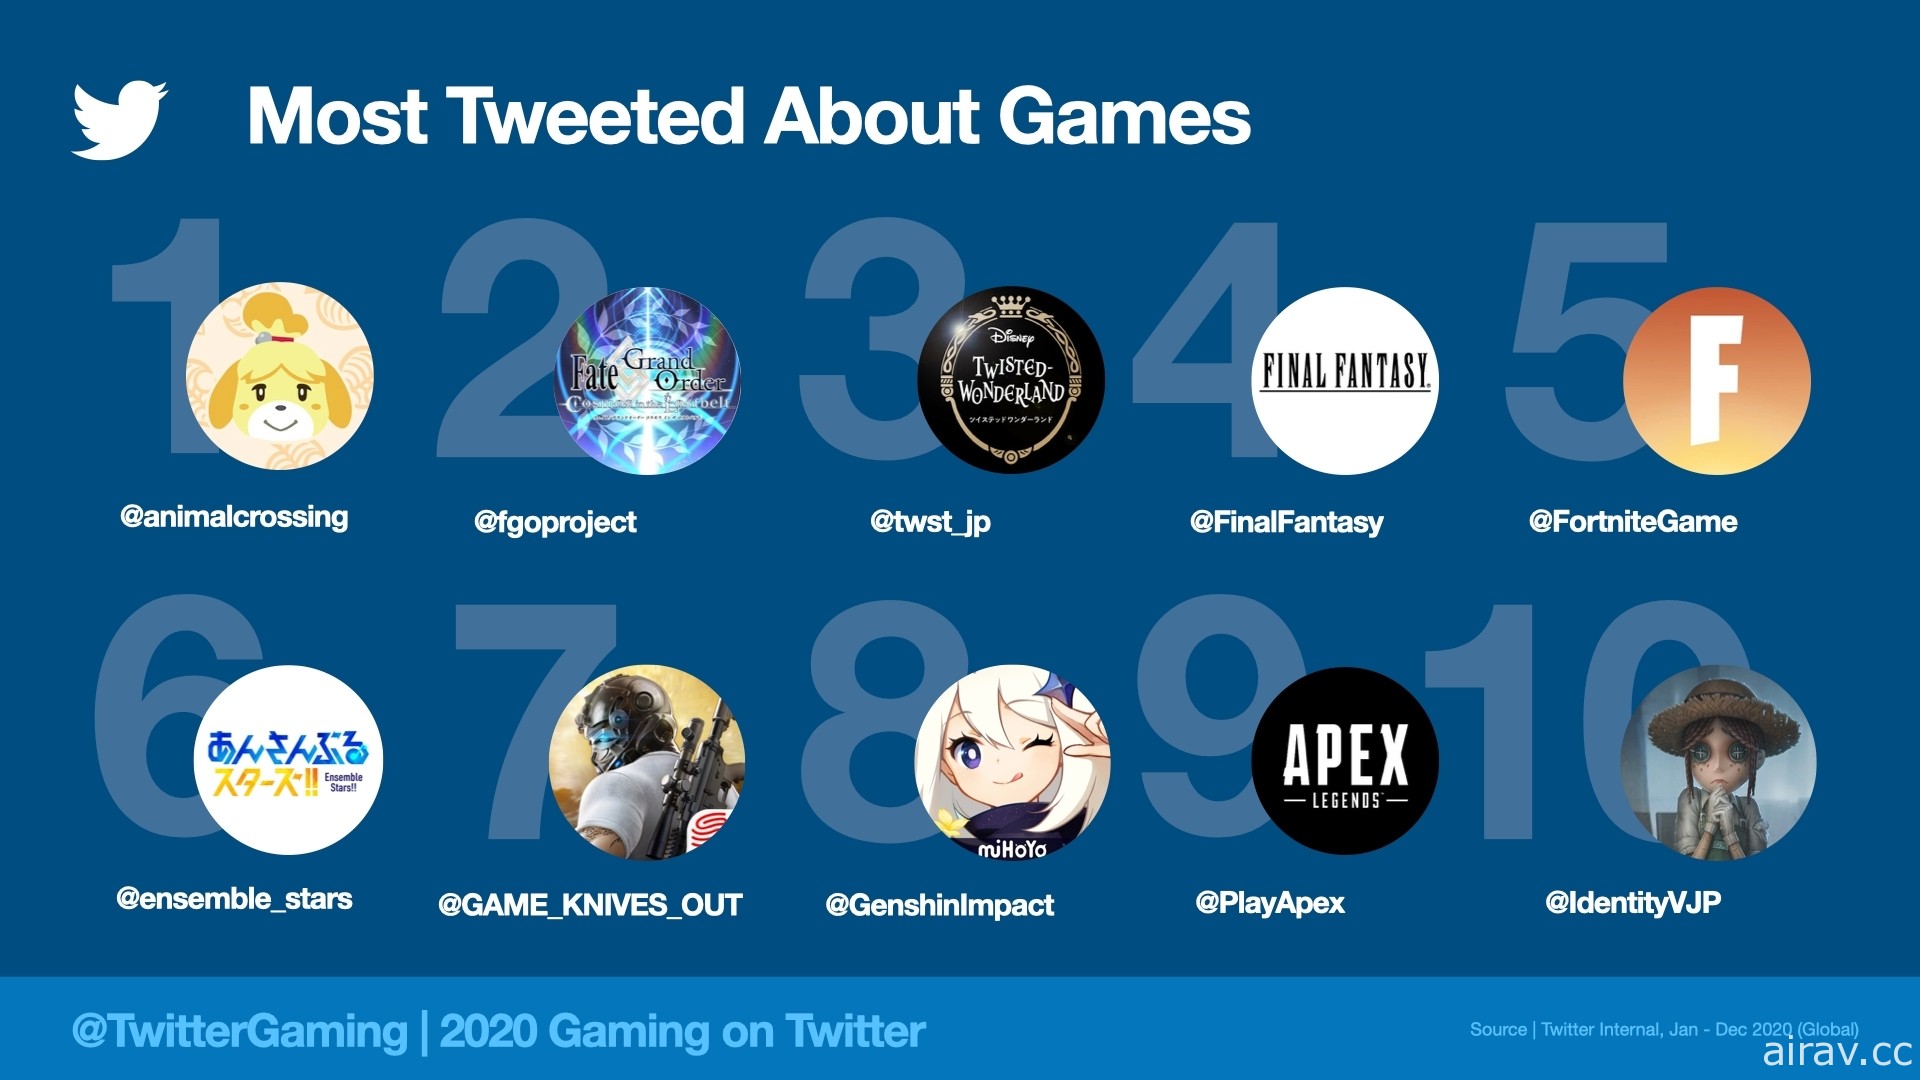 推特 2020 年遊戲相關貼文超過 20 億篇 《要塞英雄》《動物森友會》等較多人關注